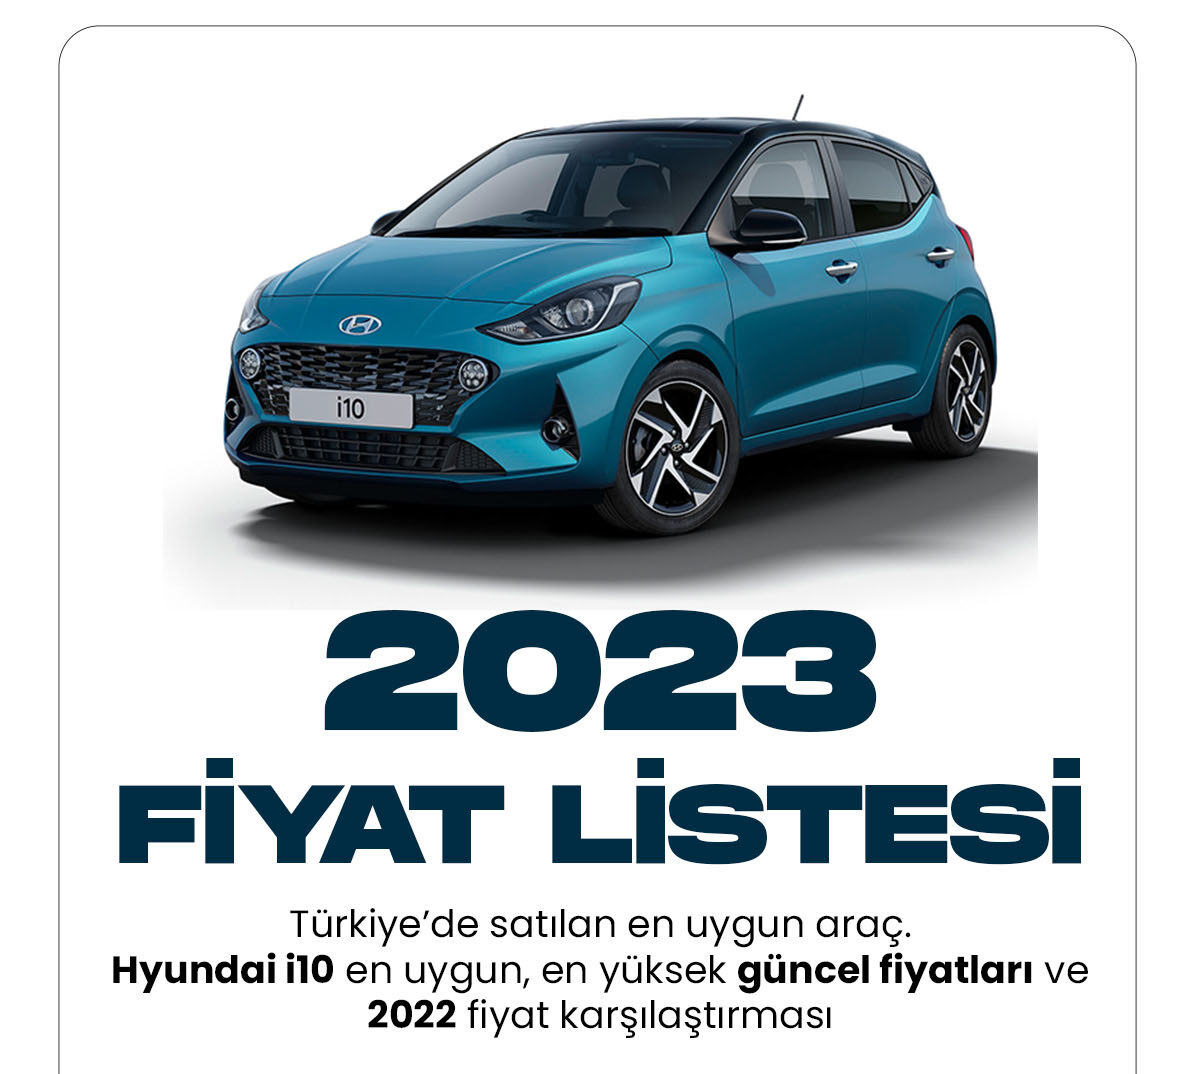 Hyundai i10 Ocak fiyat listesi yayımlandı. Türkiye'nin en uygun fiyatlı aracı olarak bilinen hyundai i10, 2023 yılında da en uygun araçlar arasında ilk sırada görülüyor.